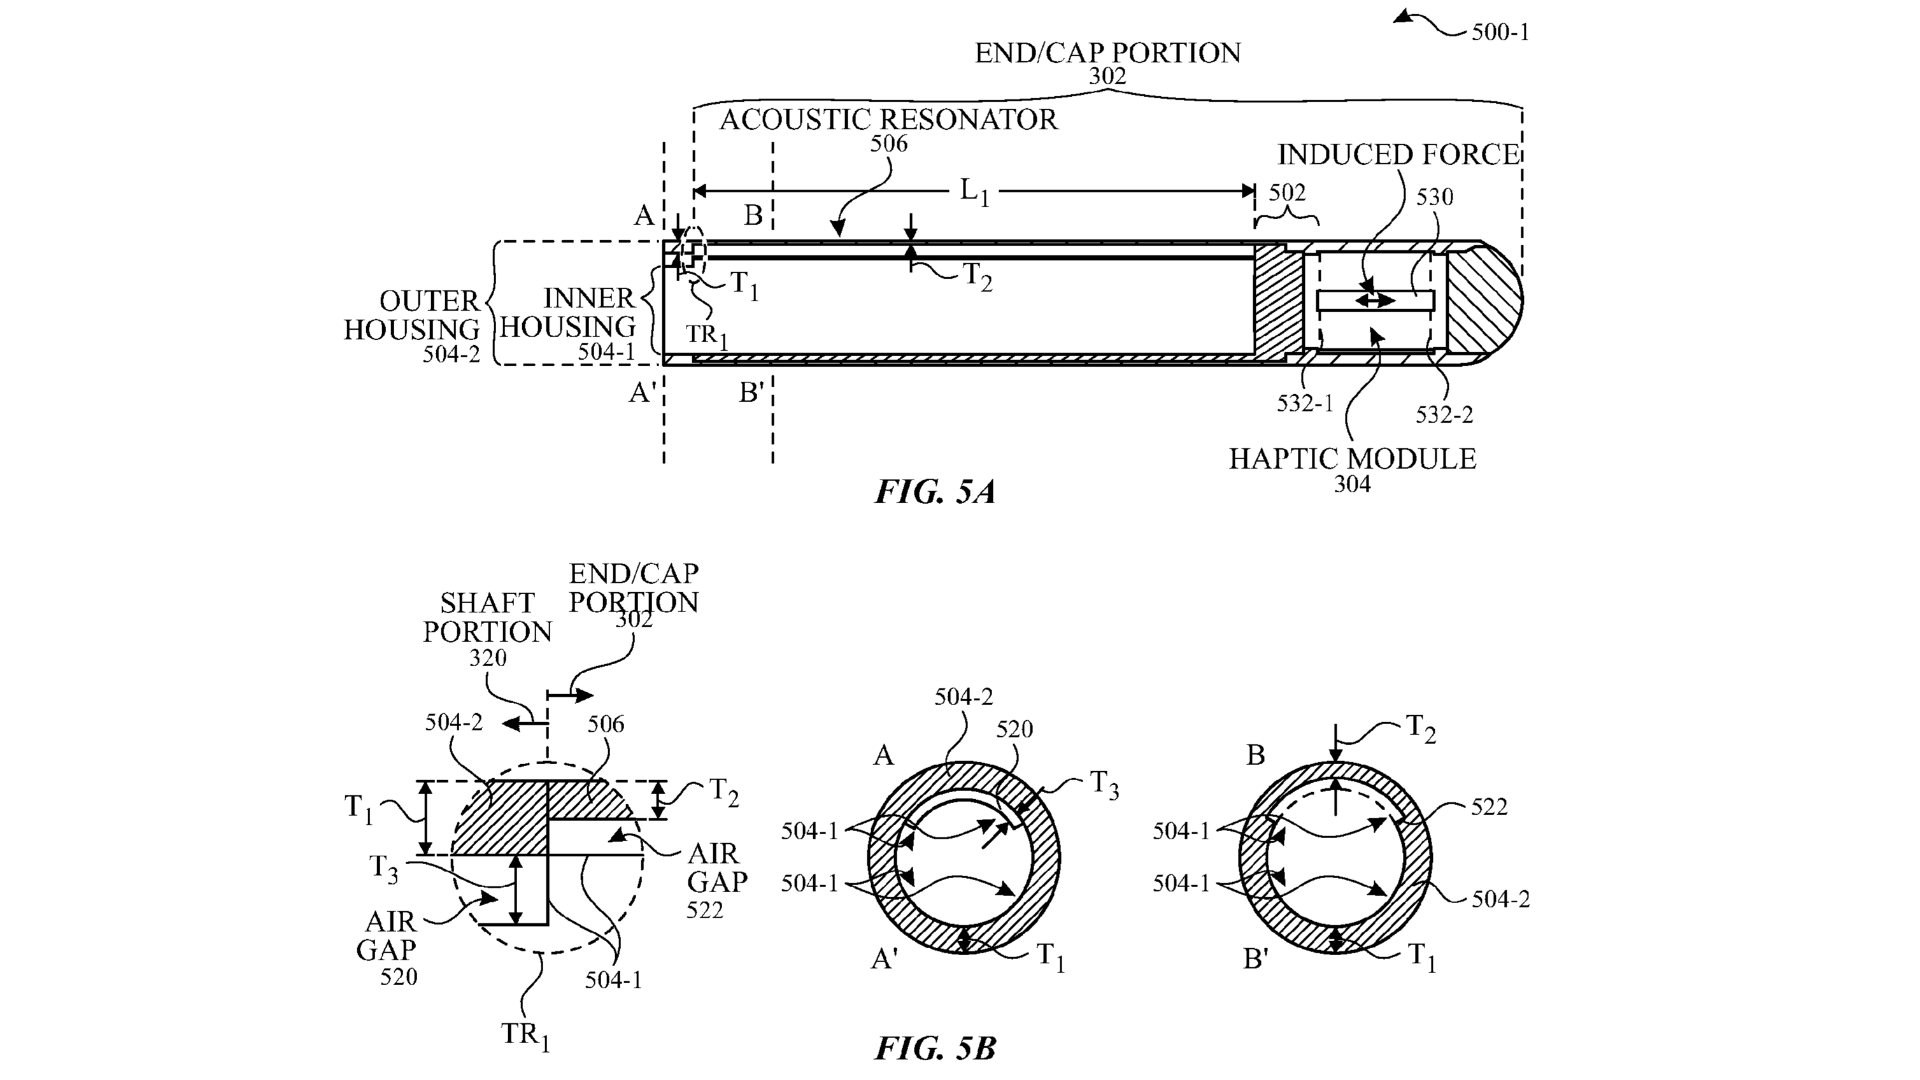 Patenttegning, der viser en fremtidig Apple Pencil med en akustisk resonator i hætten